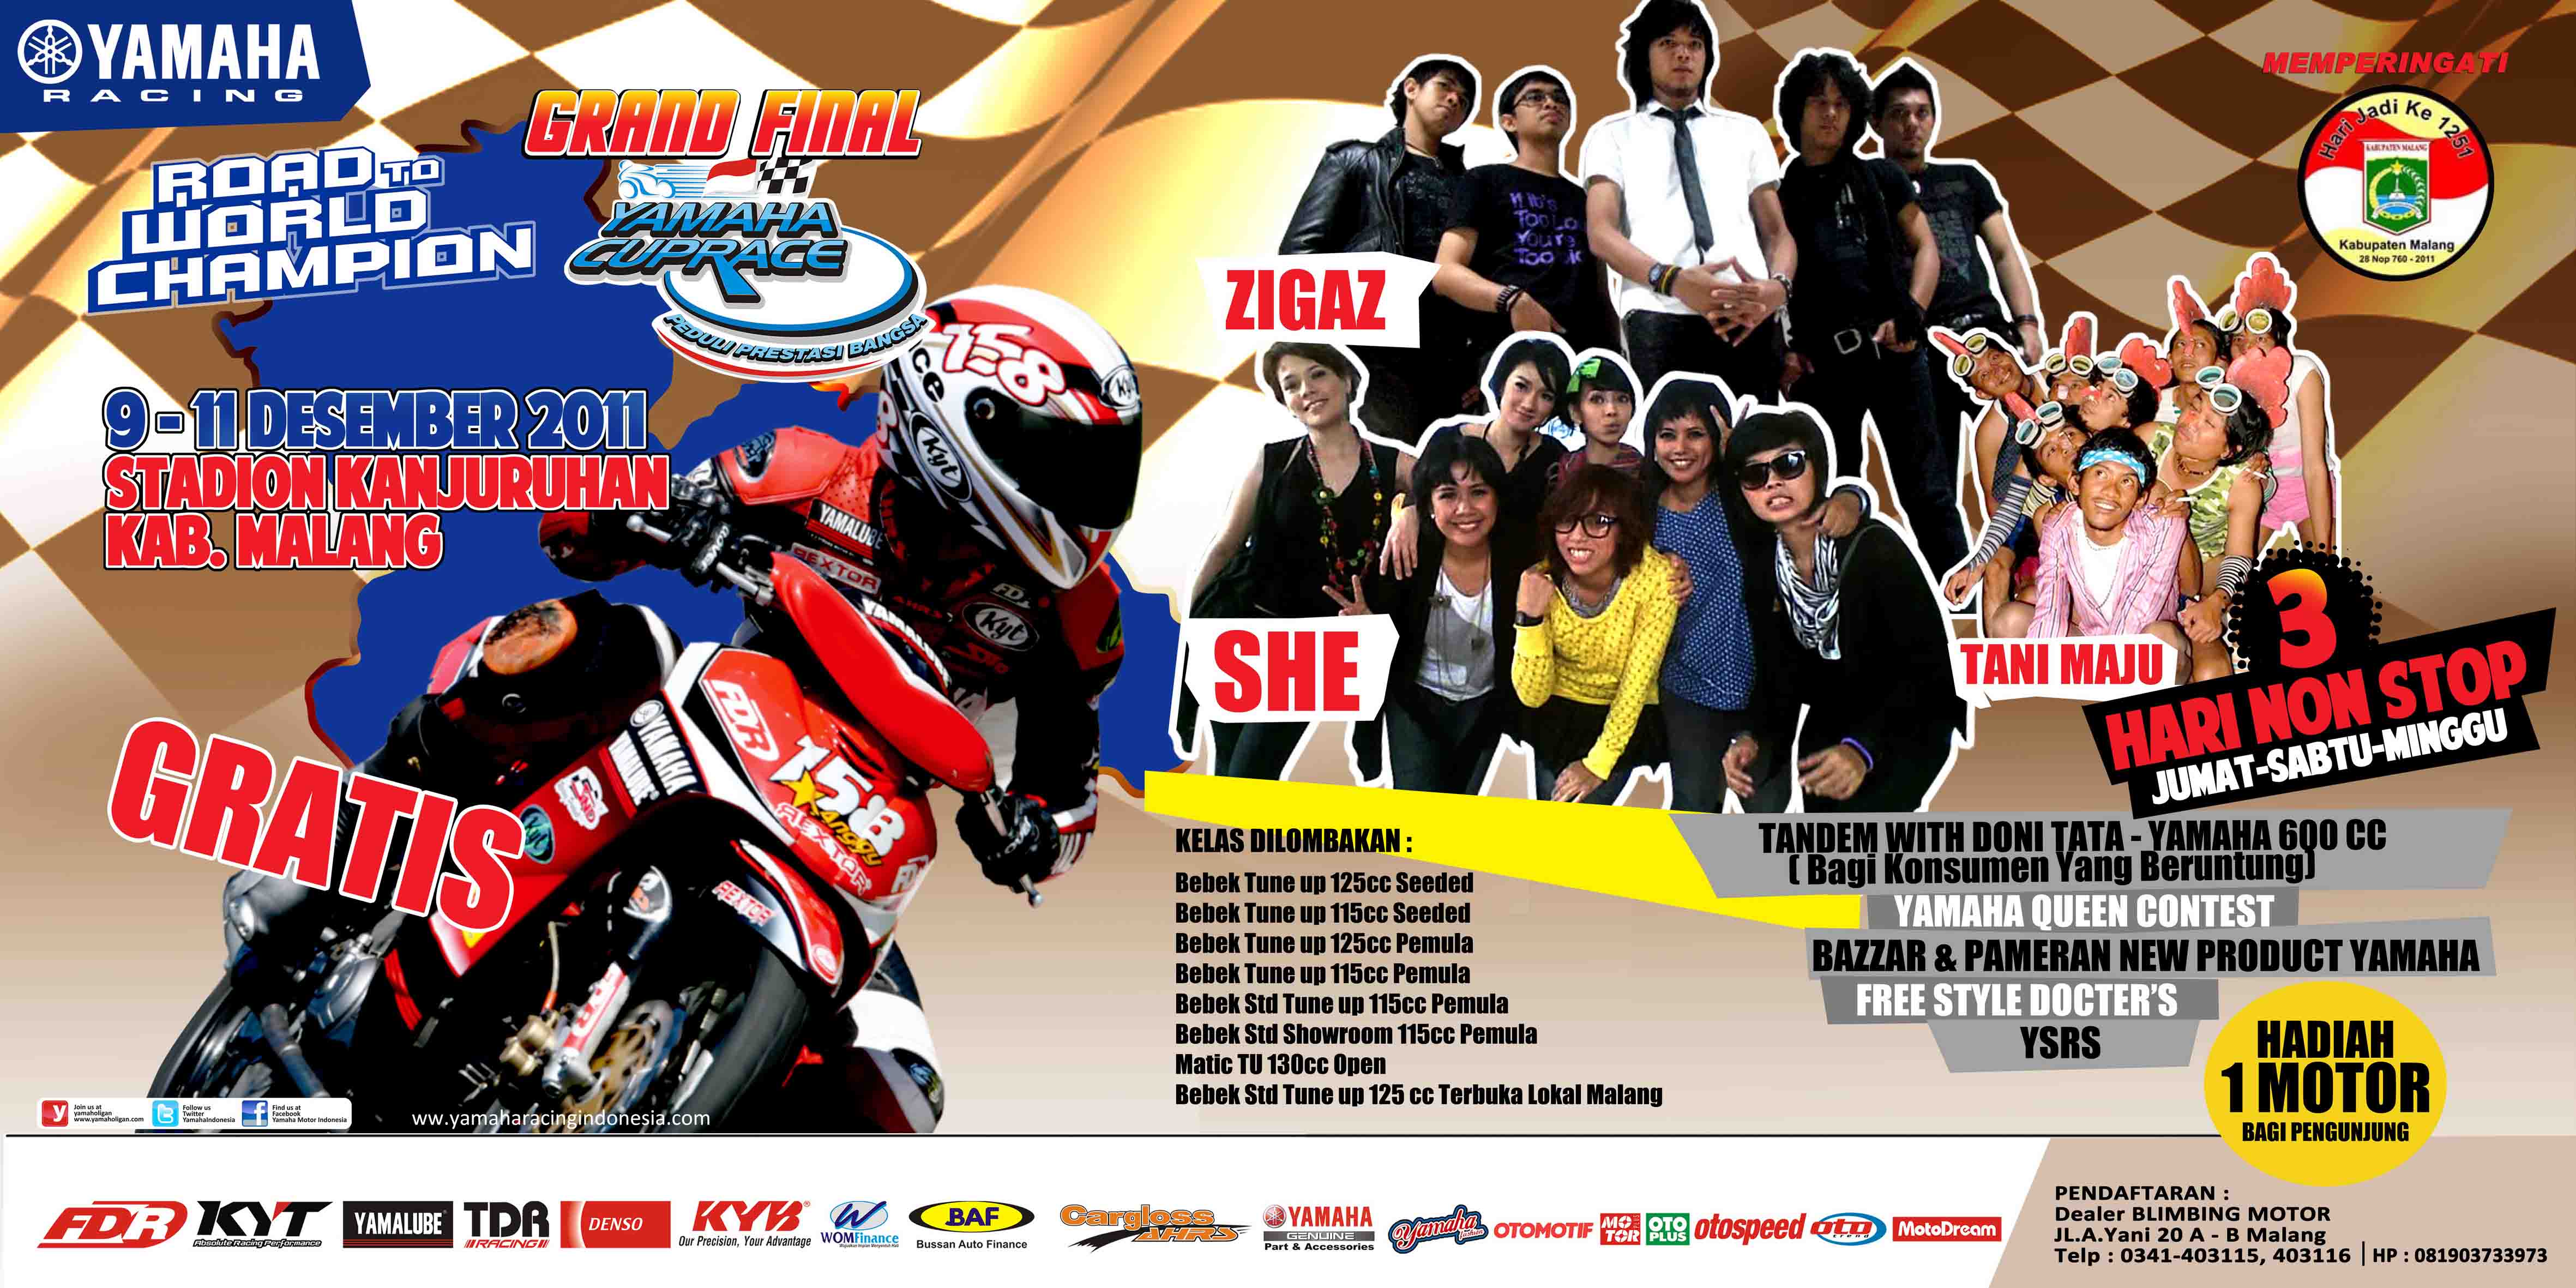 Agenda Grand Final Yamaha Cup Race Malang 2011 Foto Racing